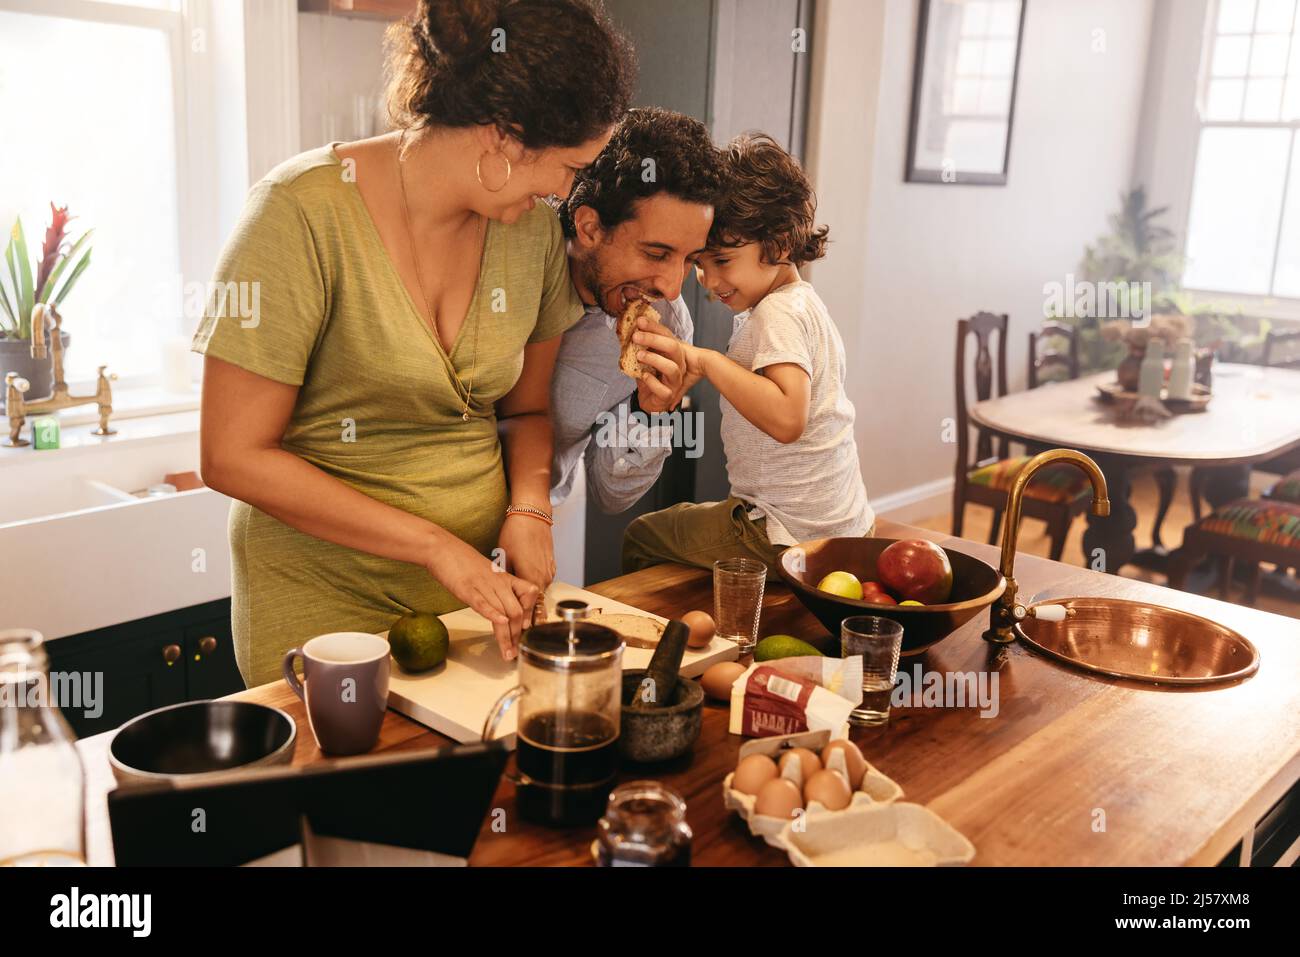 Dreiköpfige Familie, die eine gute Zeit in der Küche verbringt. Verspielter Vater, der ein Stück Brot isst, während seine Frau Frühstück macht. Junge Familie, die Spaß hat Stockfoto